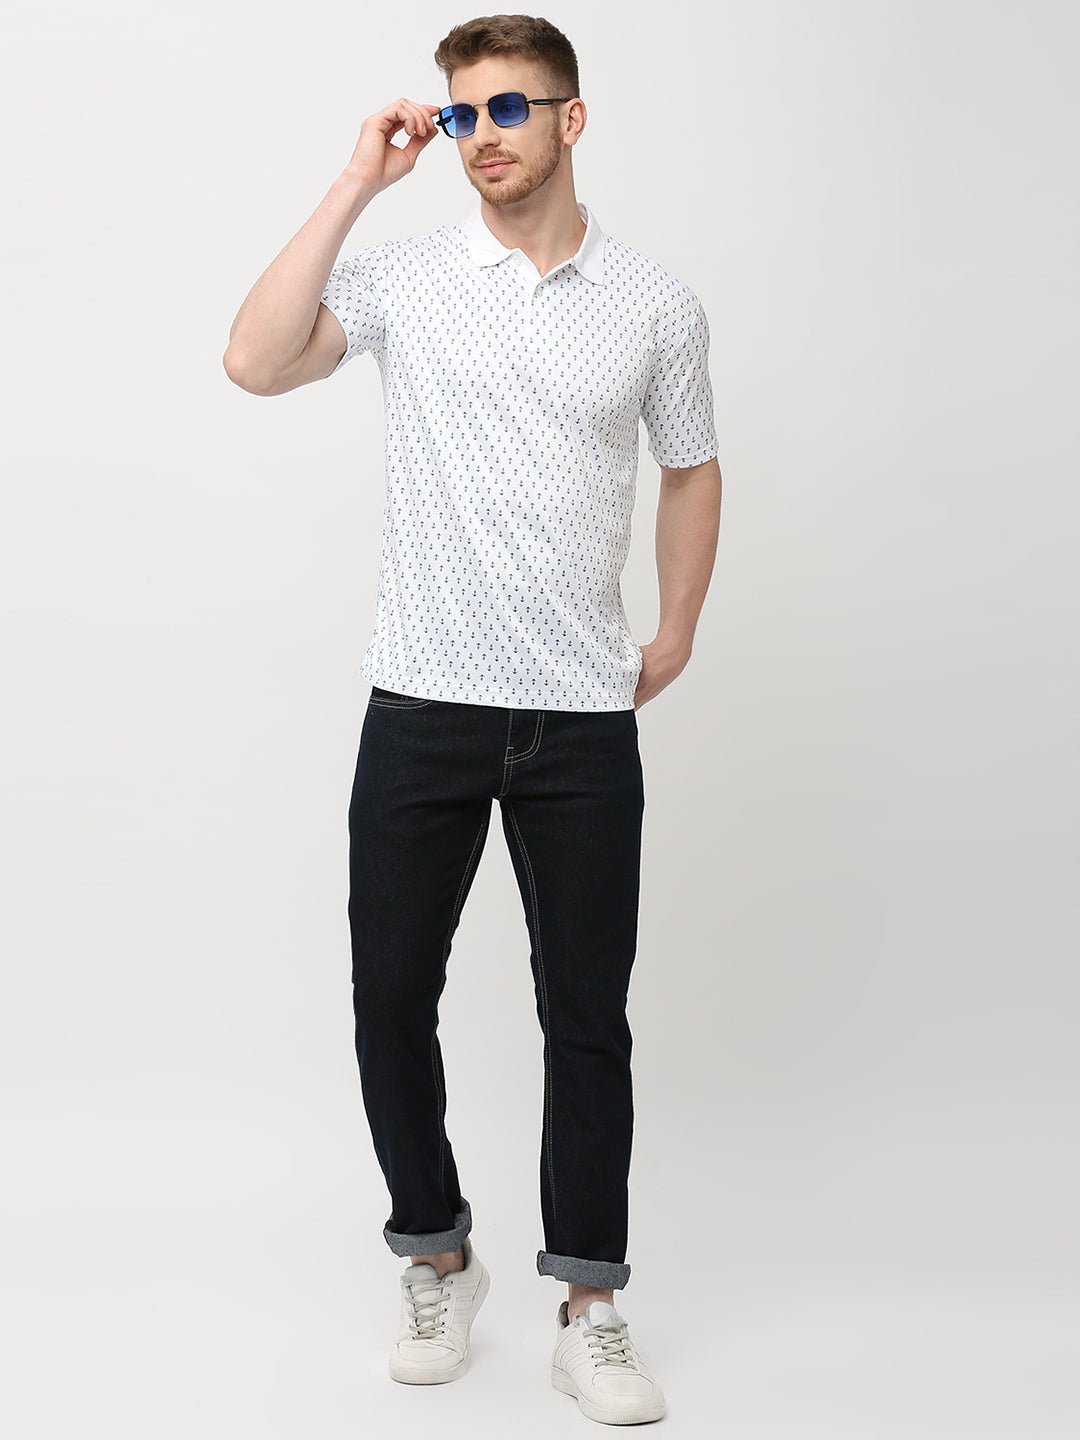 Polo T-shirt (Anchor Print) - White